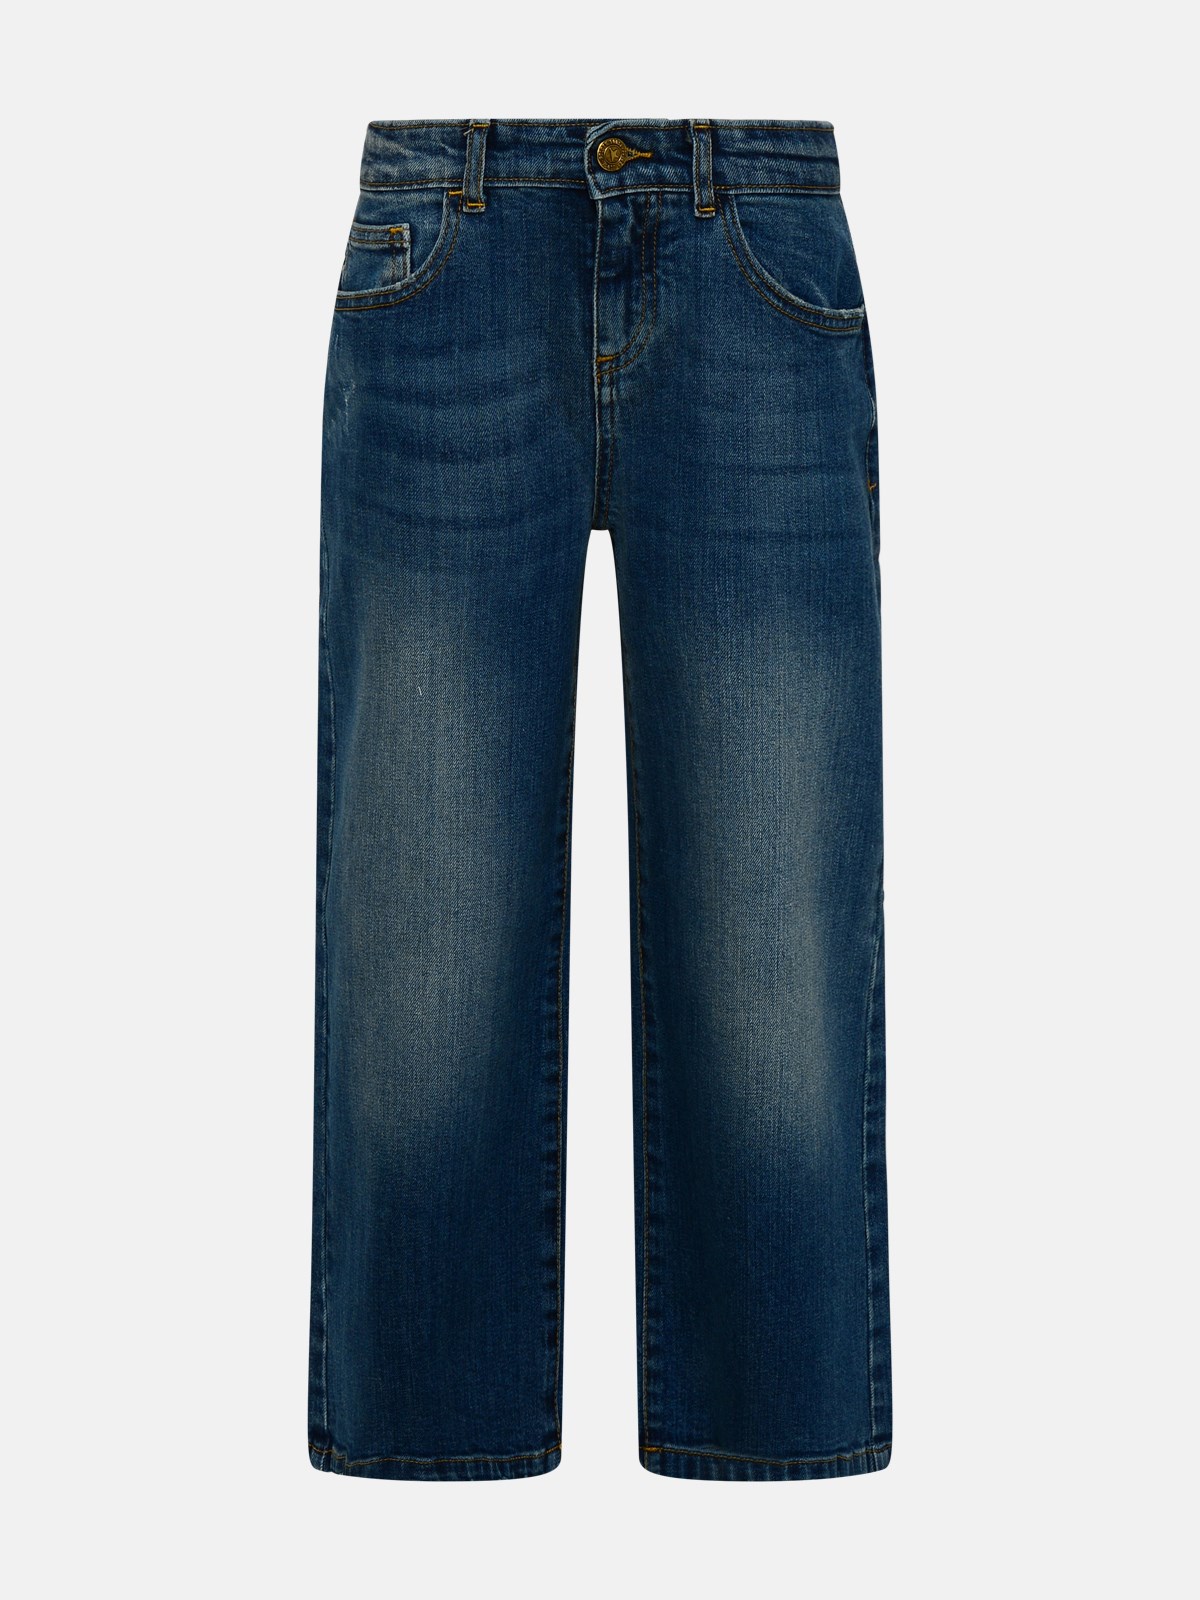 Shop Golden Goose Blue Cotton Denim Jeans